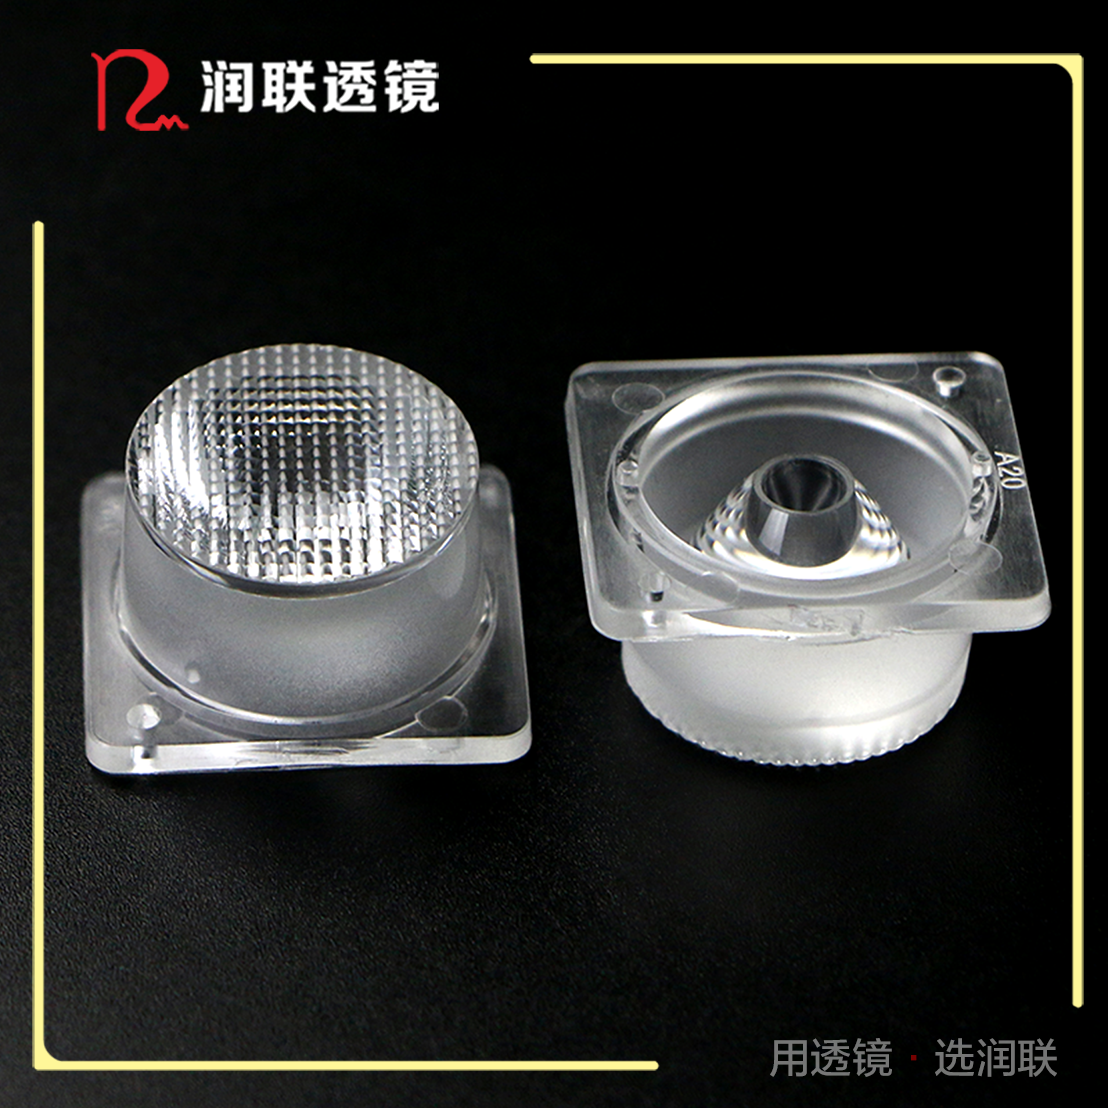 2米对打侧发光透镜直径26MM角度15×40度侧发光灯箱透镜 广告灯箱透镜